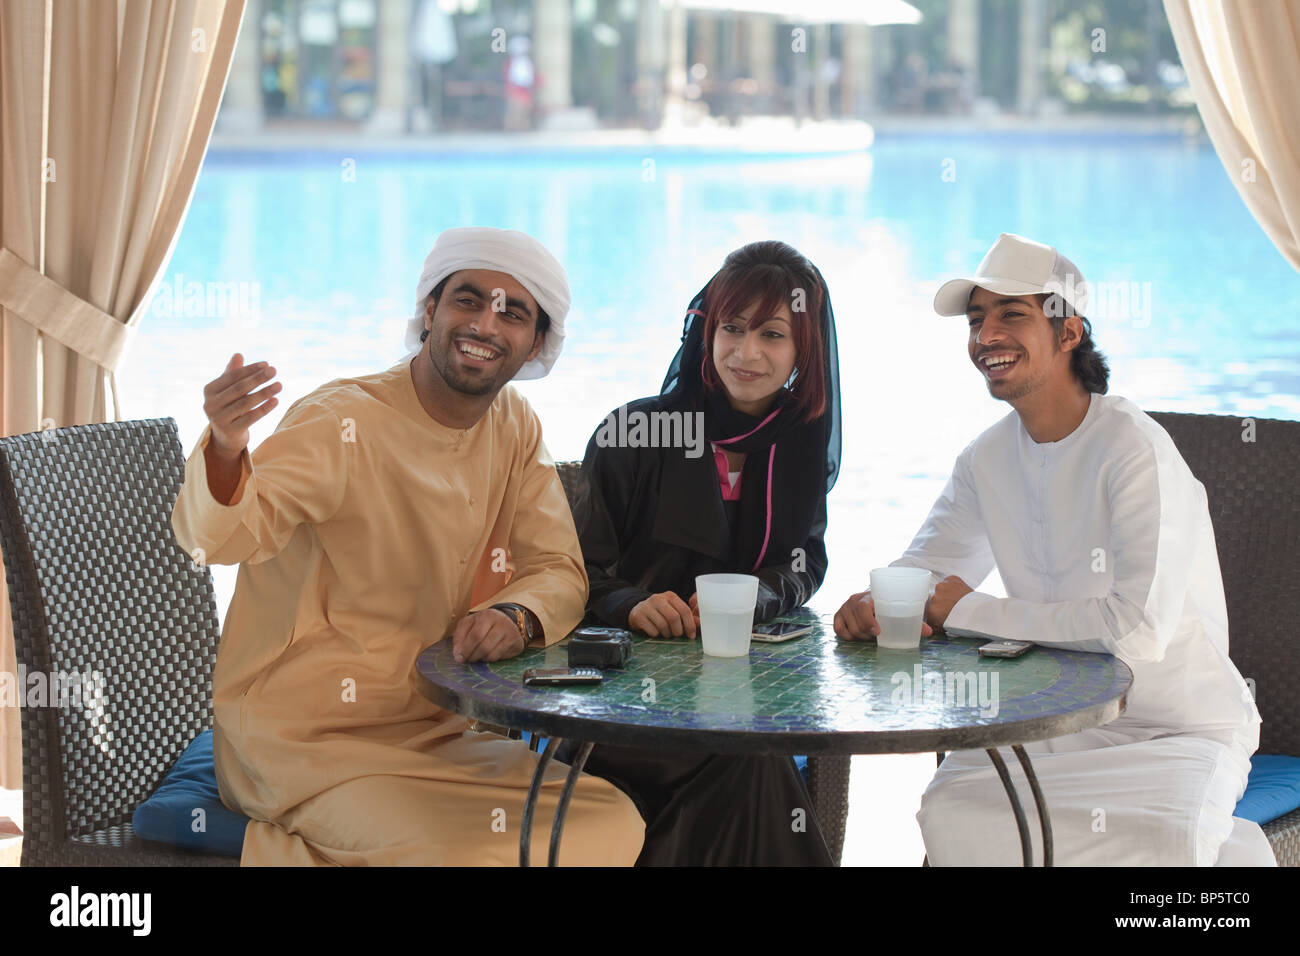 Les gens du Moyen-Orient sitting at table outdoors Banque D'Images